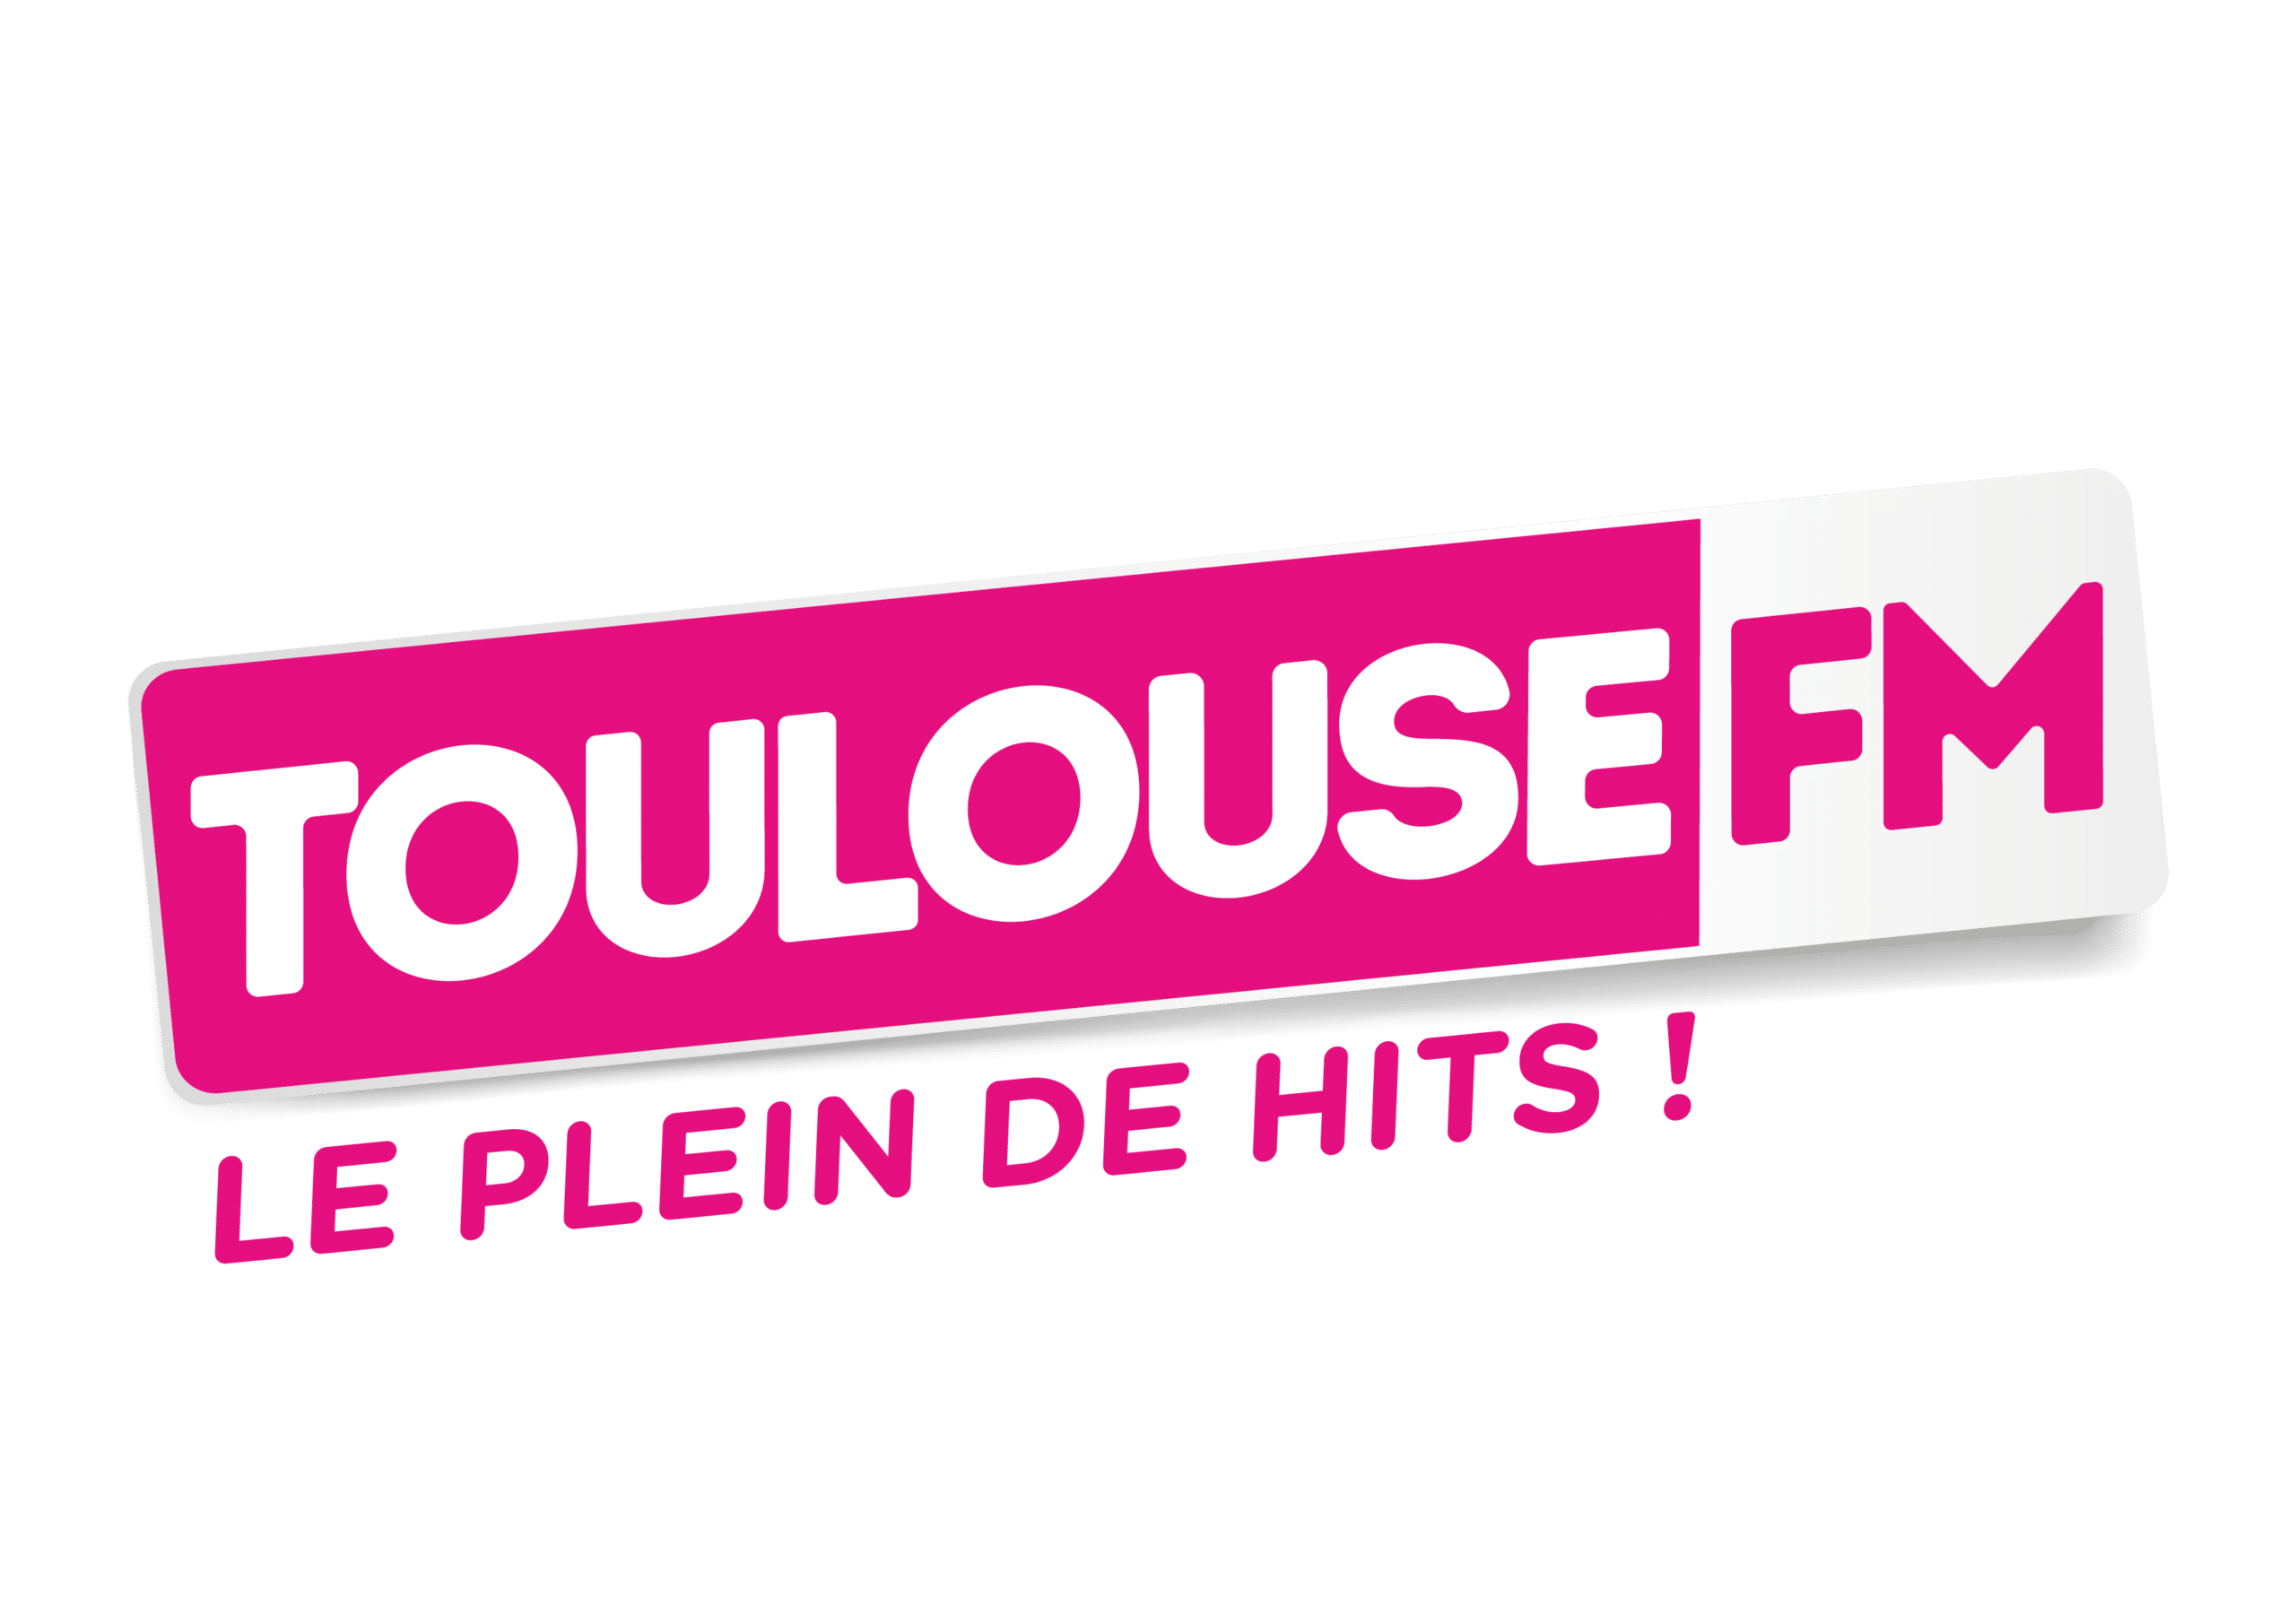 Toulouse FM Radio